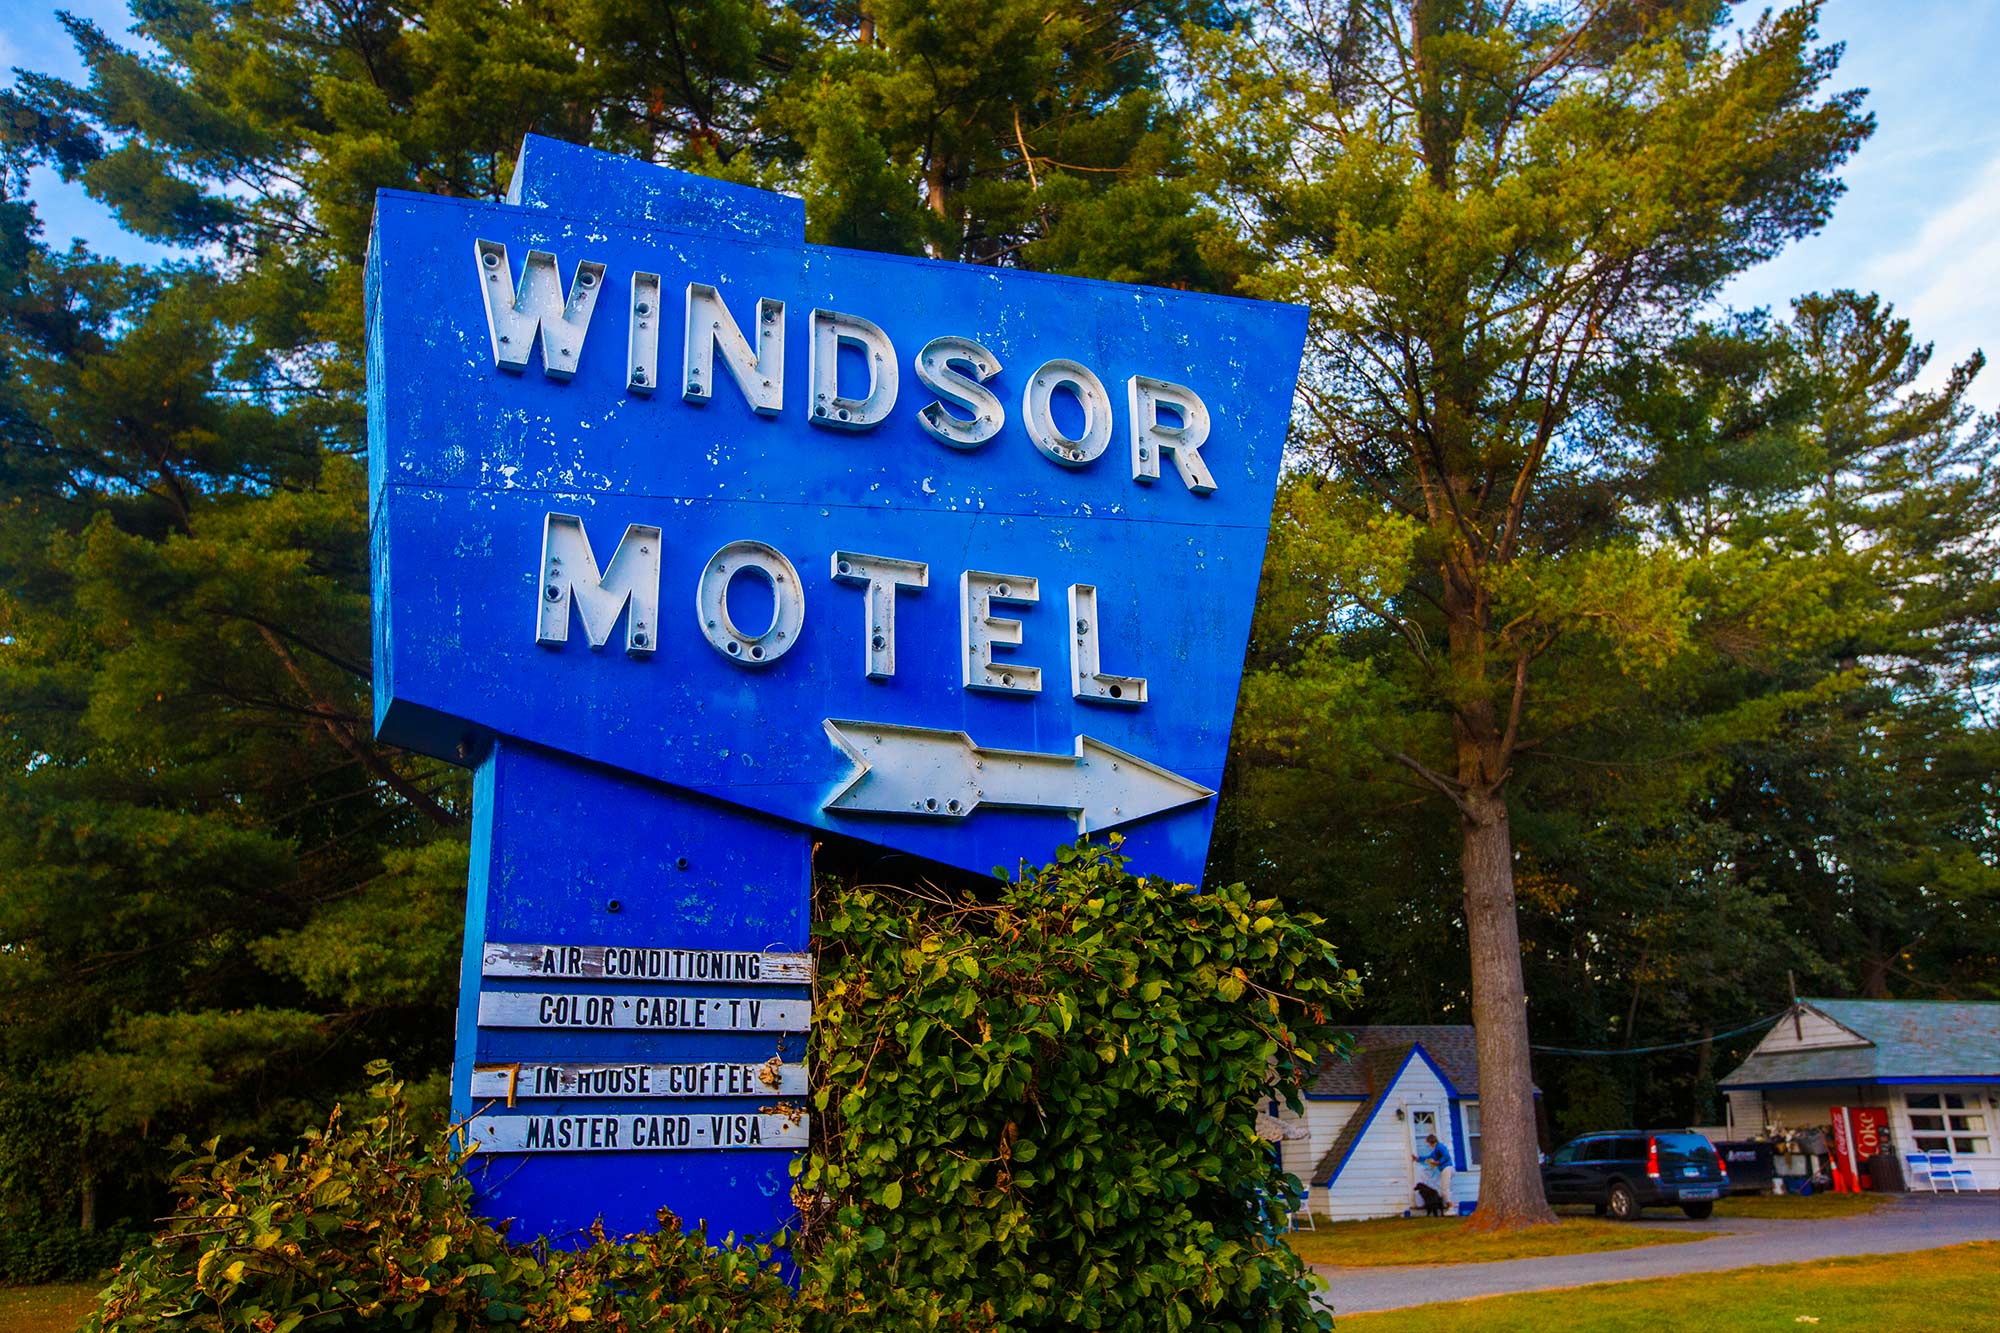 Windsor Motel, Ascutney, VT- 9/26/15